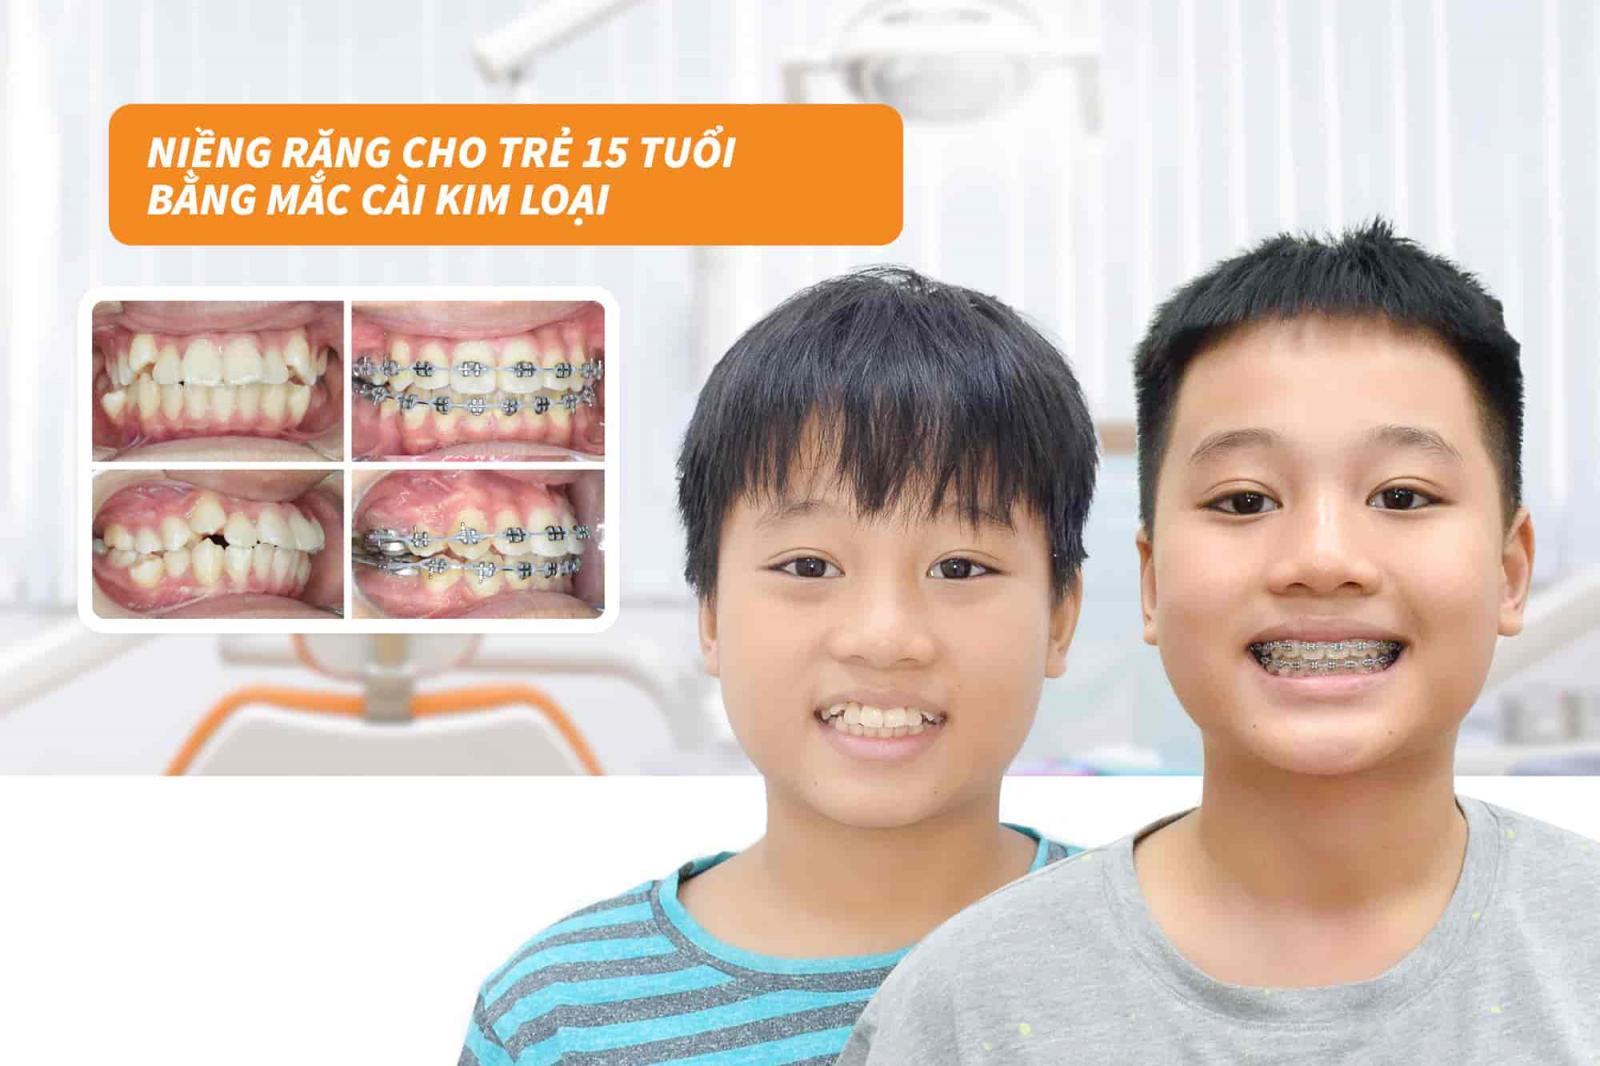 Niềng răng cho trẻ 15 tuổi bằng mắc cài kim loại